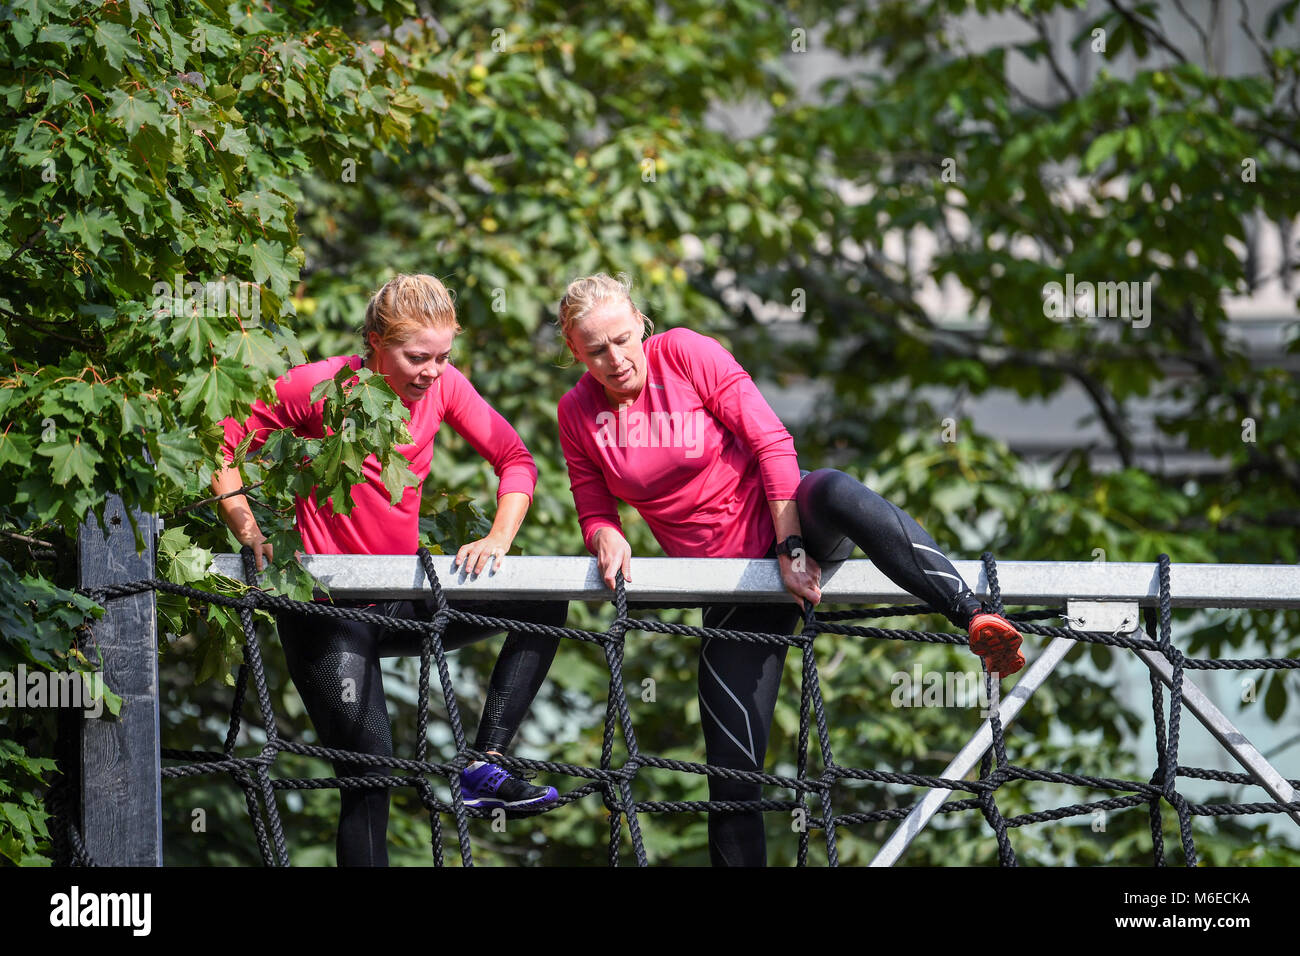 Klettern Hindernisse in Aktion Hindernislauf 2017 laufen in der Stadt Norrköping, Schweden im September 2017 laufen Stockfoto